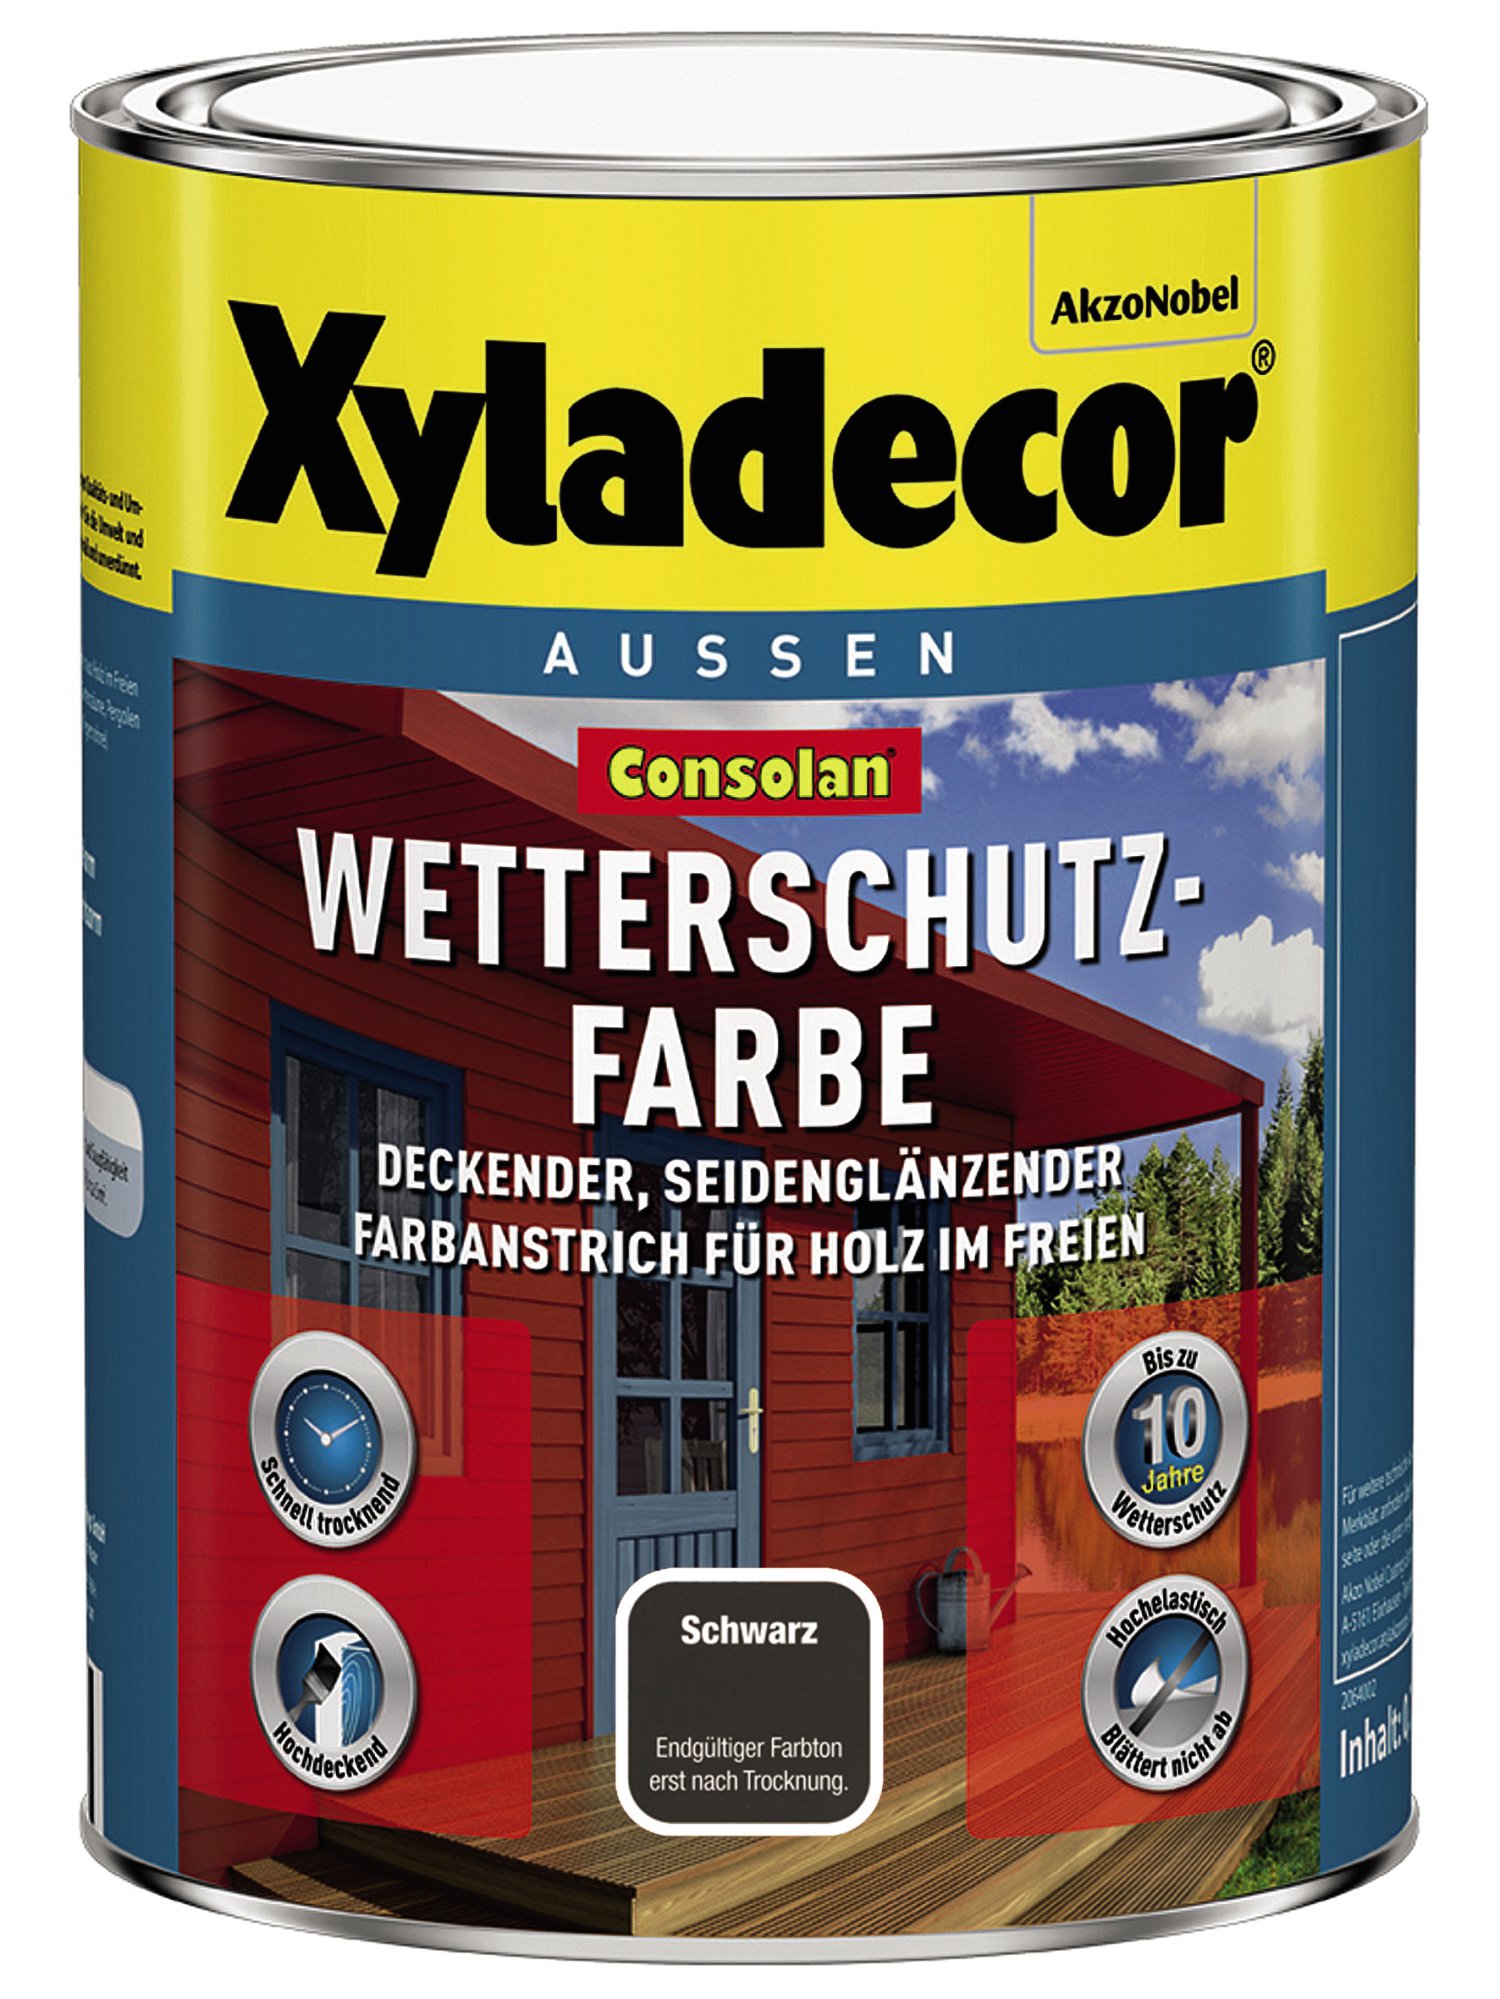 XYLADECOR Wetterschutzfarbe Schwarz